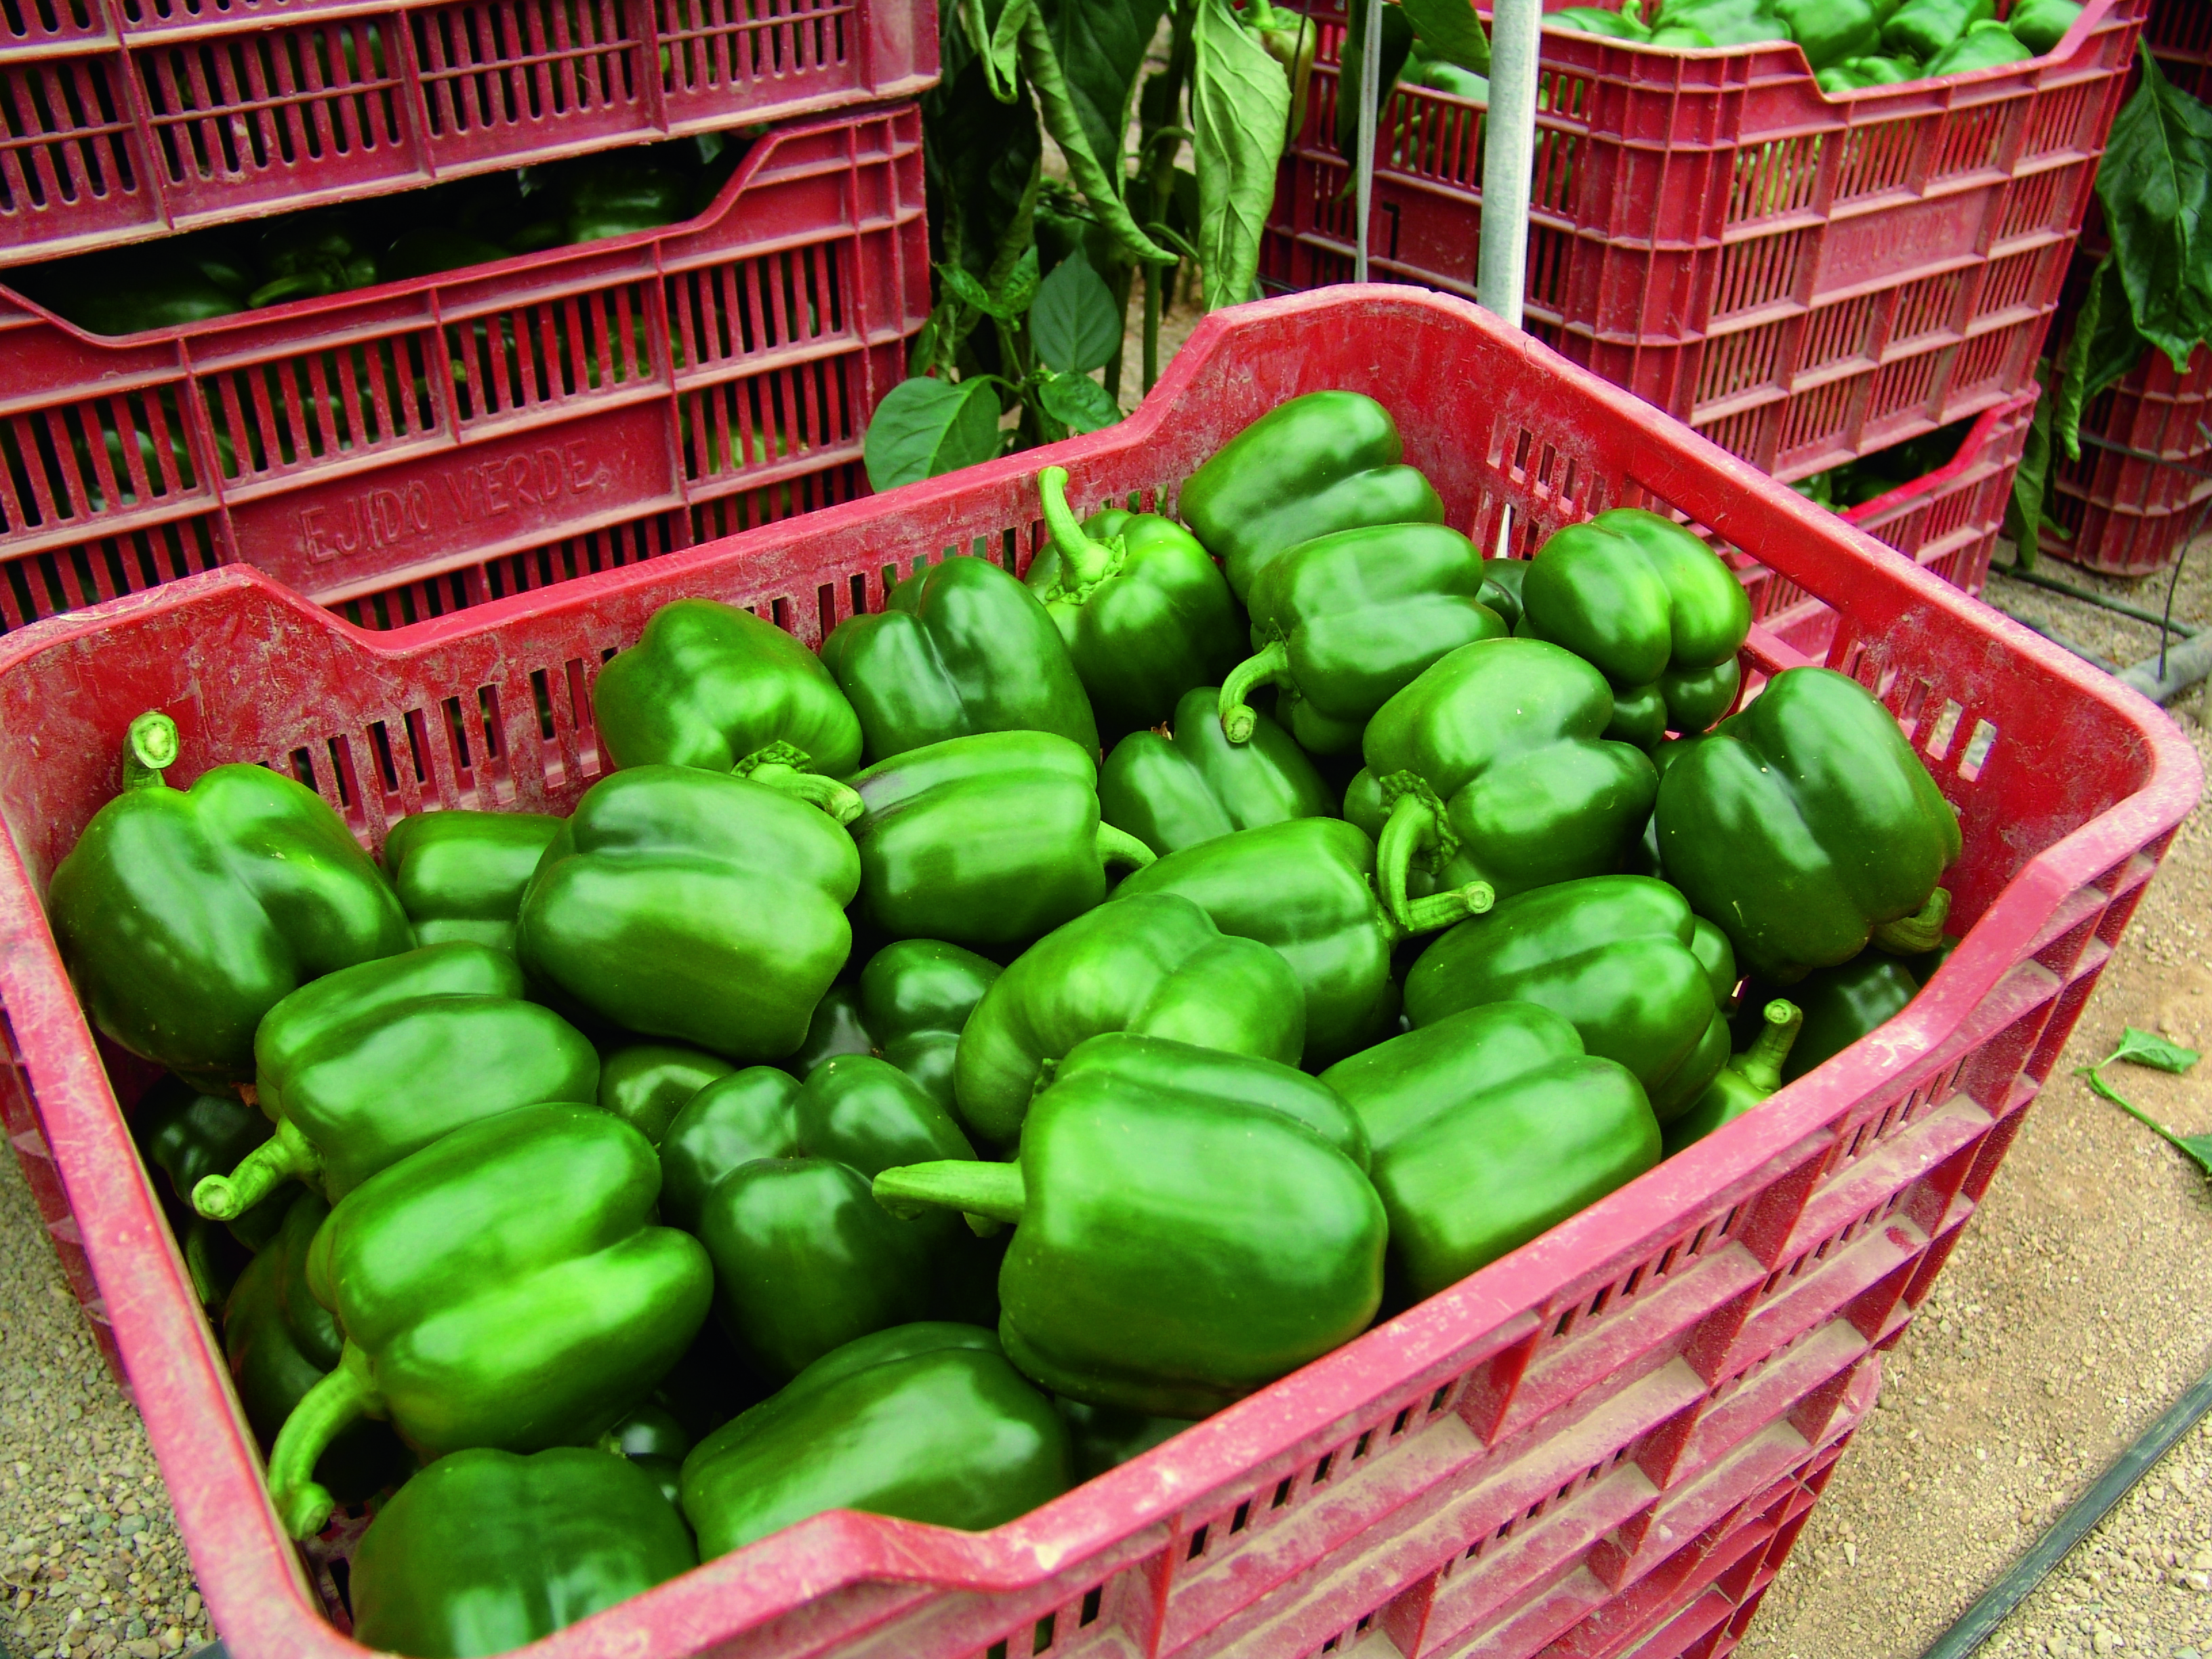 Las hortalizas almerienses sufren un desplome generalizado de precios en la semana 16